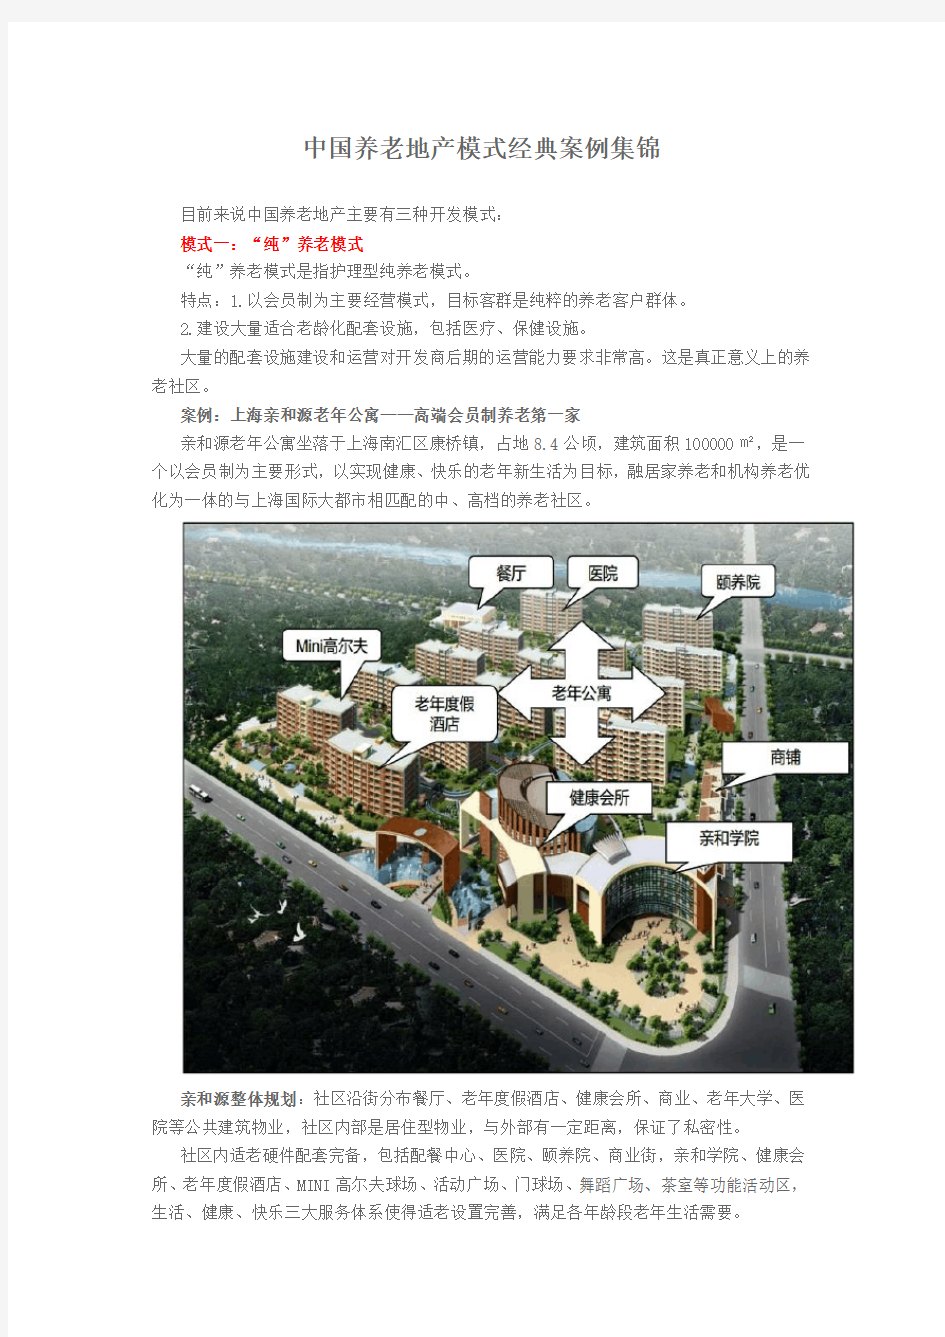 中国养老地产模式经典案例集锦